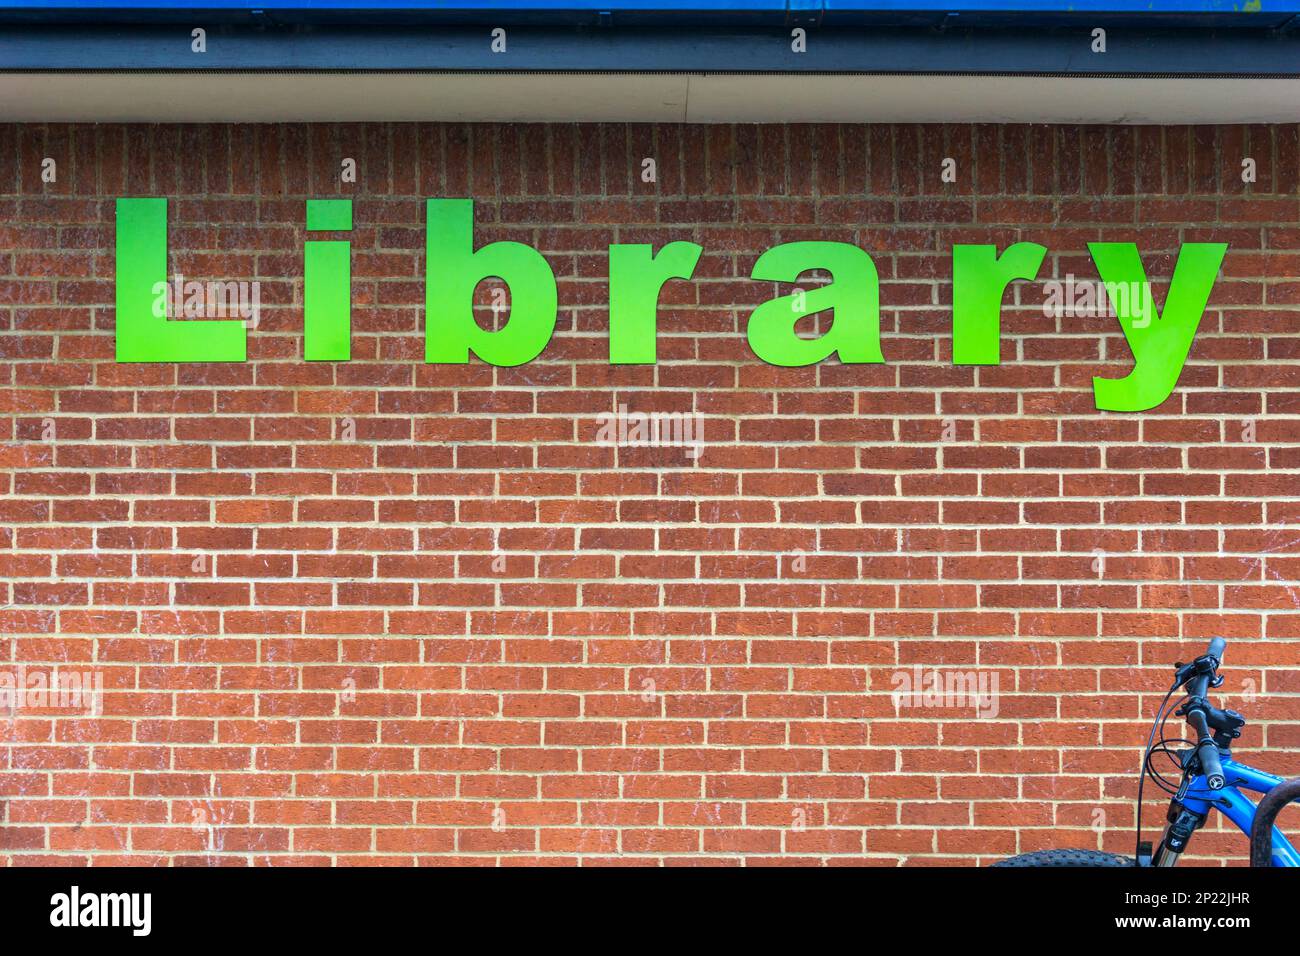 Das Wort Bibliothek in großen grünen Buchstaben auf der Ziegelwand einer öffentlichen Bibliothek. Stockfoto